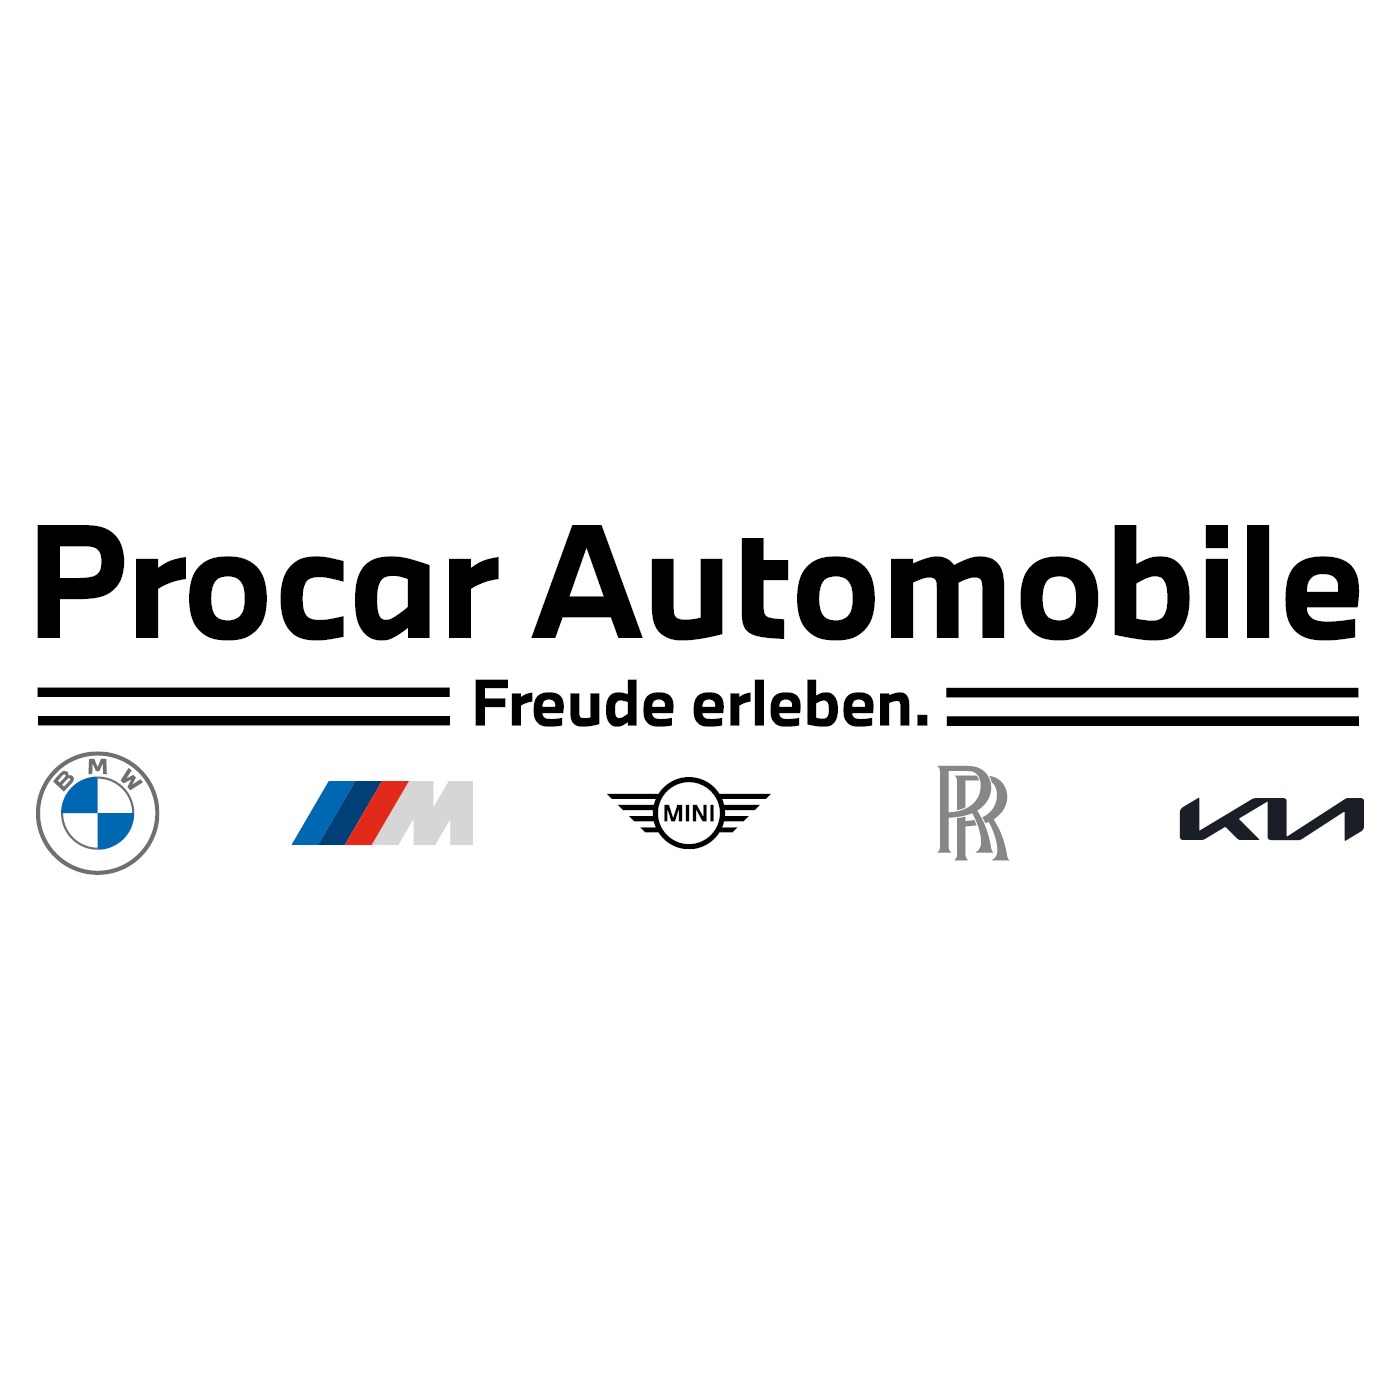 Procar Automobile - Unna in Unna - Logo